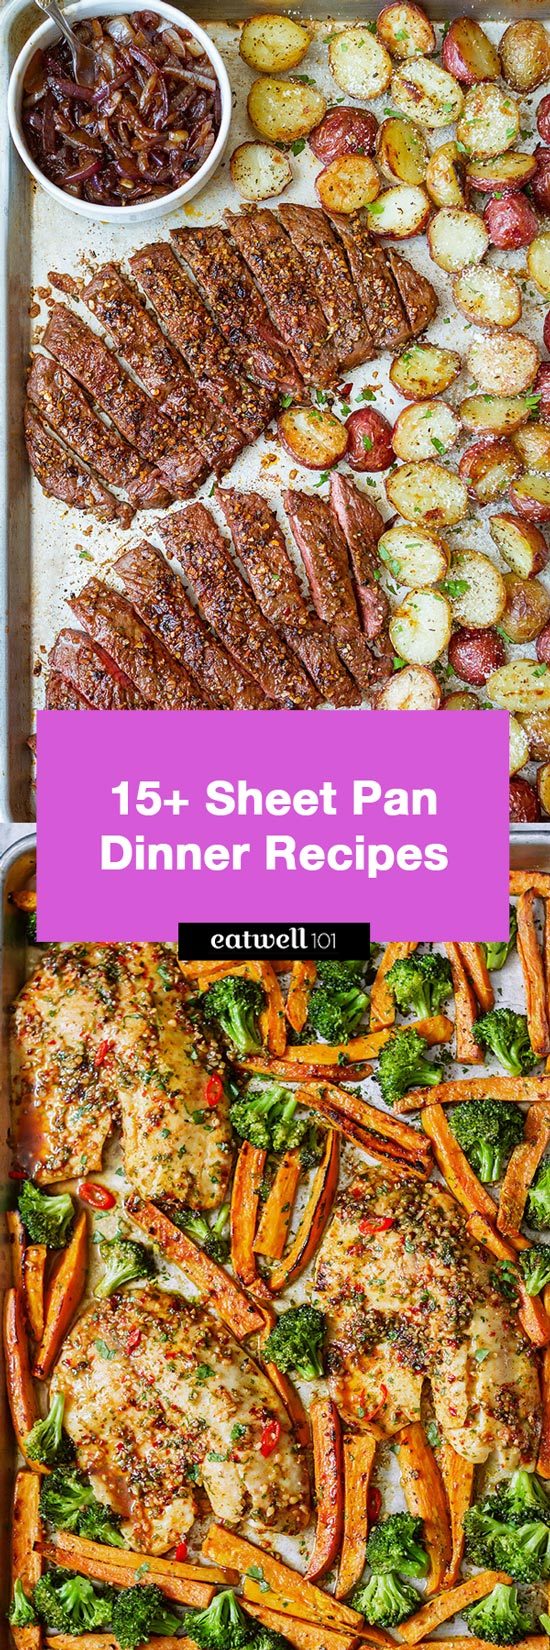 https://www.eatwell101.com/wp-content/uploads/2018/06/15-Sheet-Pan-Dinner-Recipes.jpg